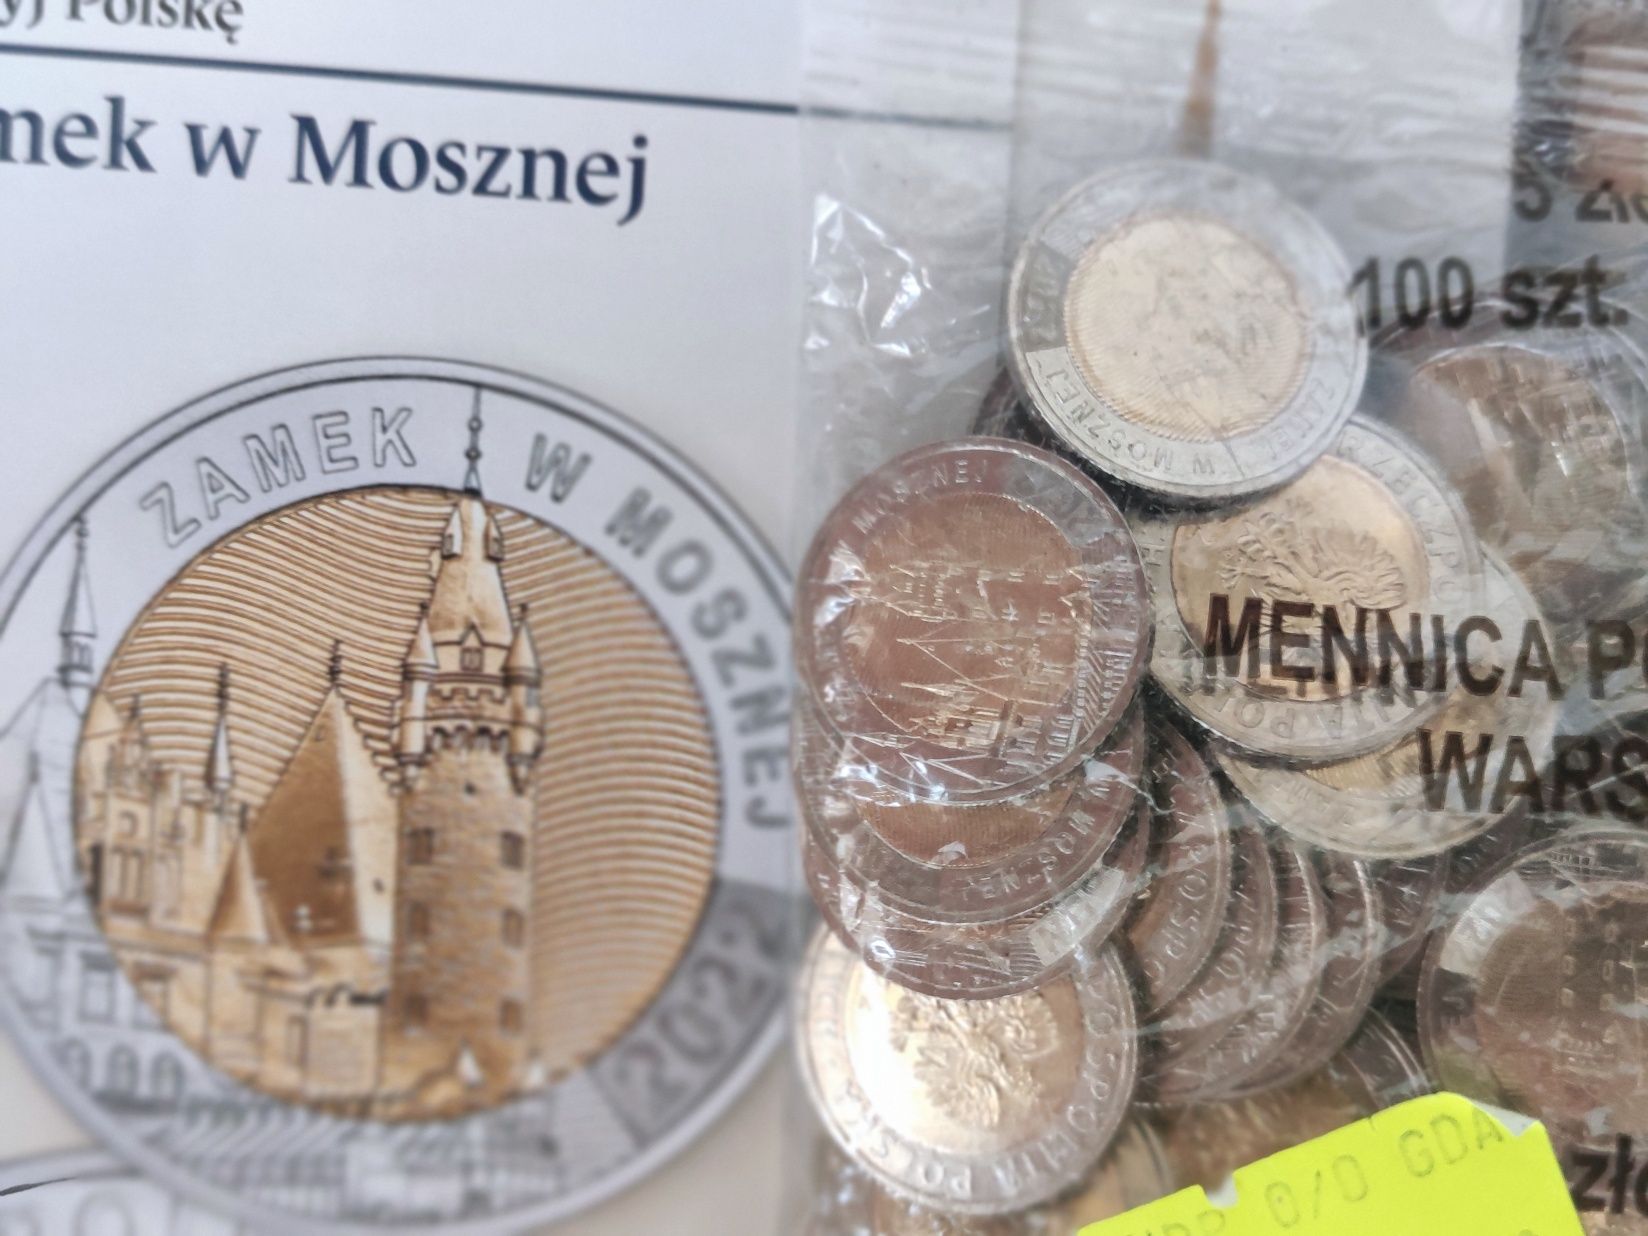 Monety 5 zł 100 sztuk worek menniczy Zamek w Mosznej NBP inwestycja